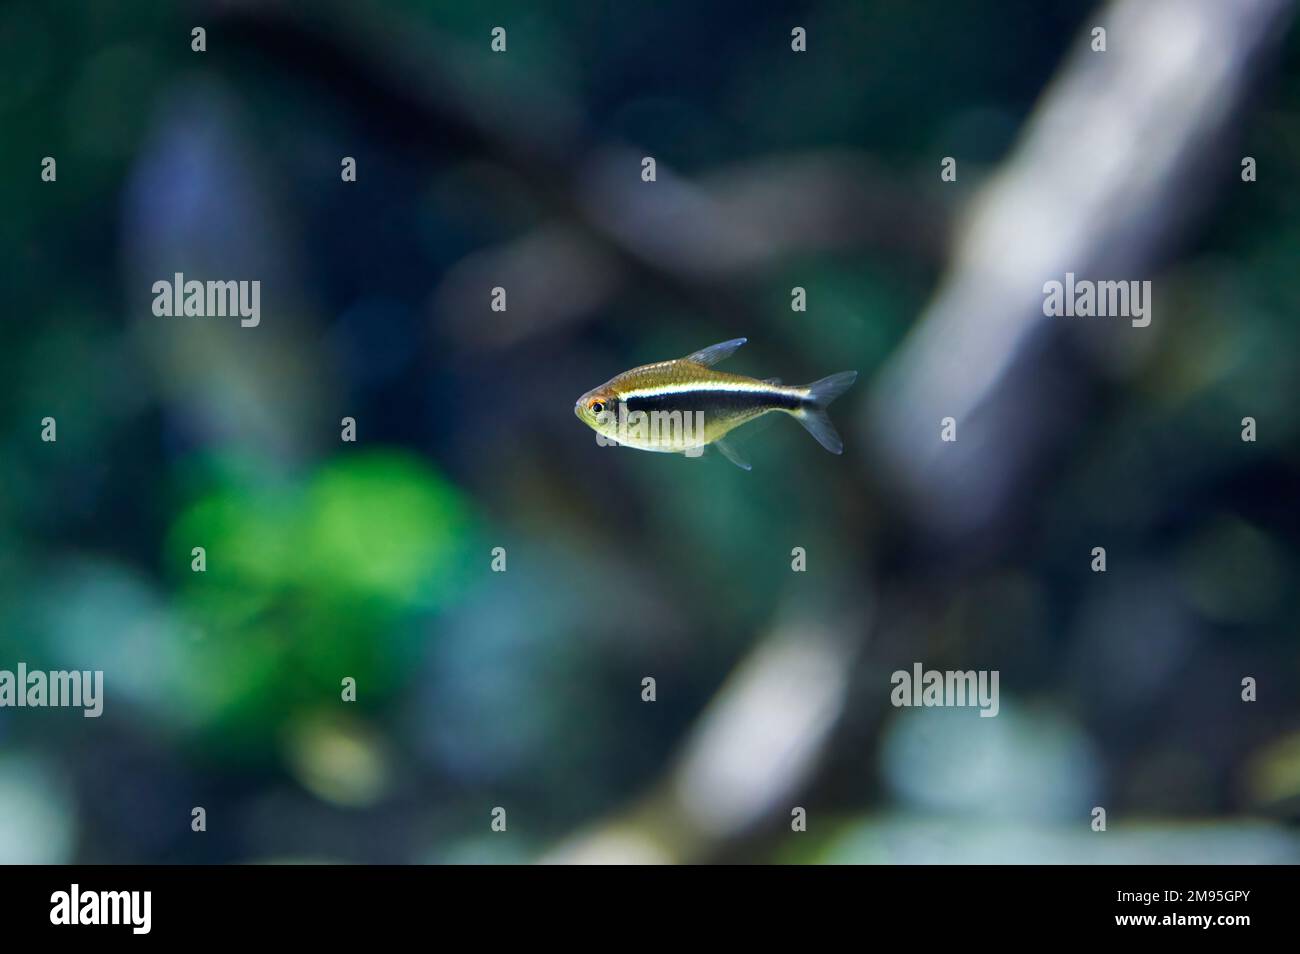 Neon Black Tetra (Hyphessobrycon herbertaxelrodi) small silver colored characin fish swimming in fresh water Stock Photo